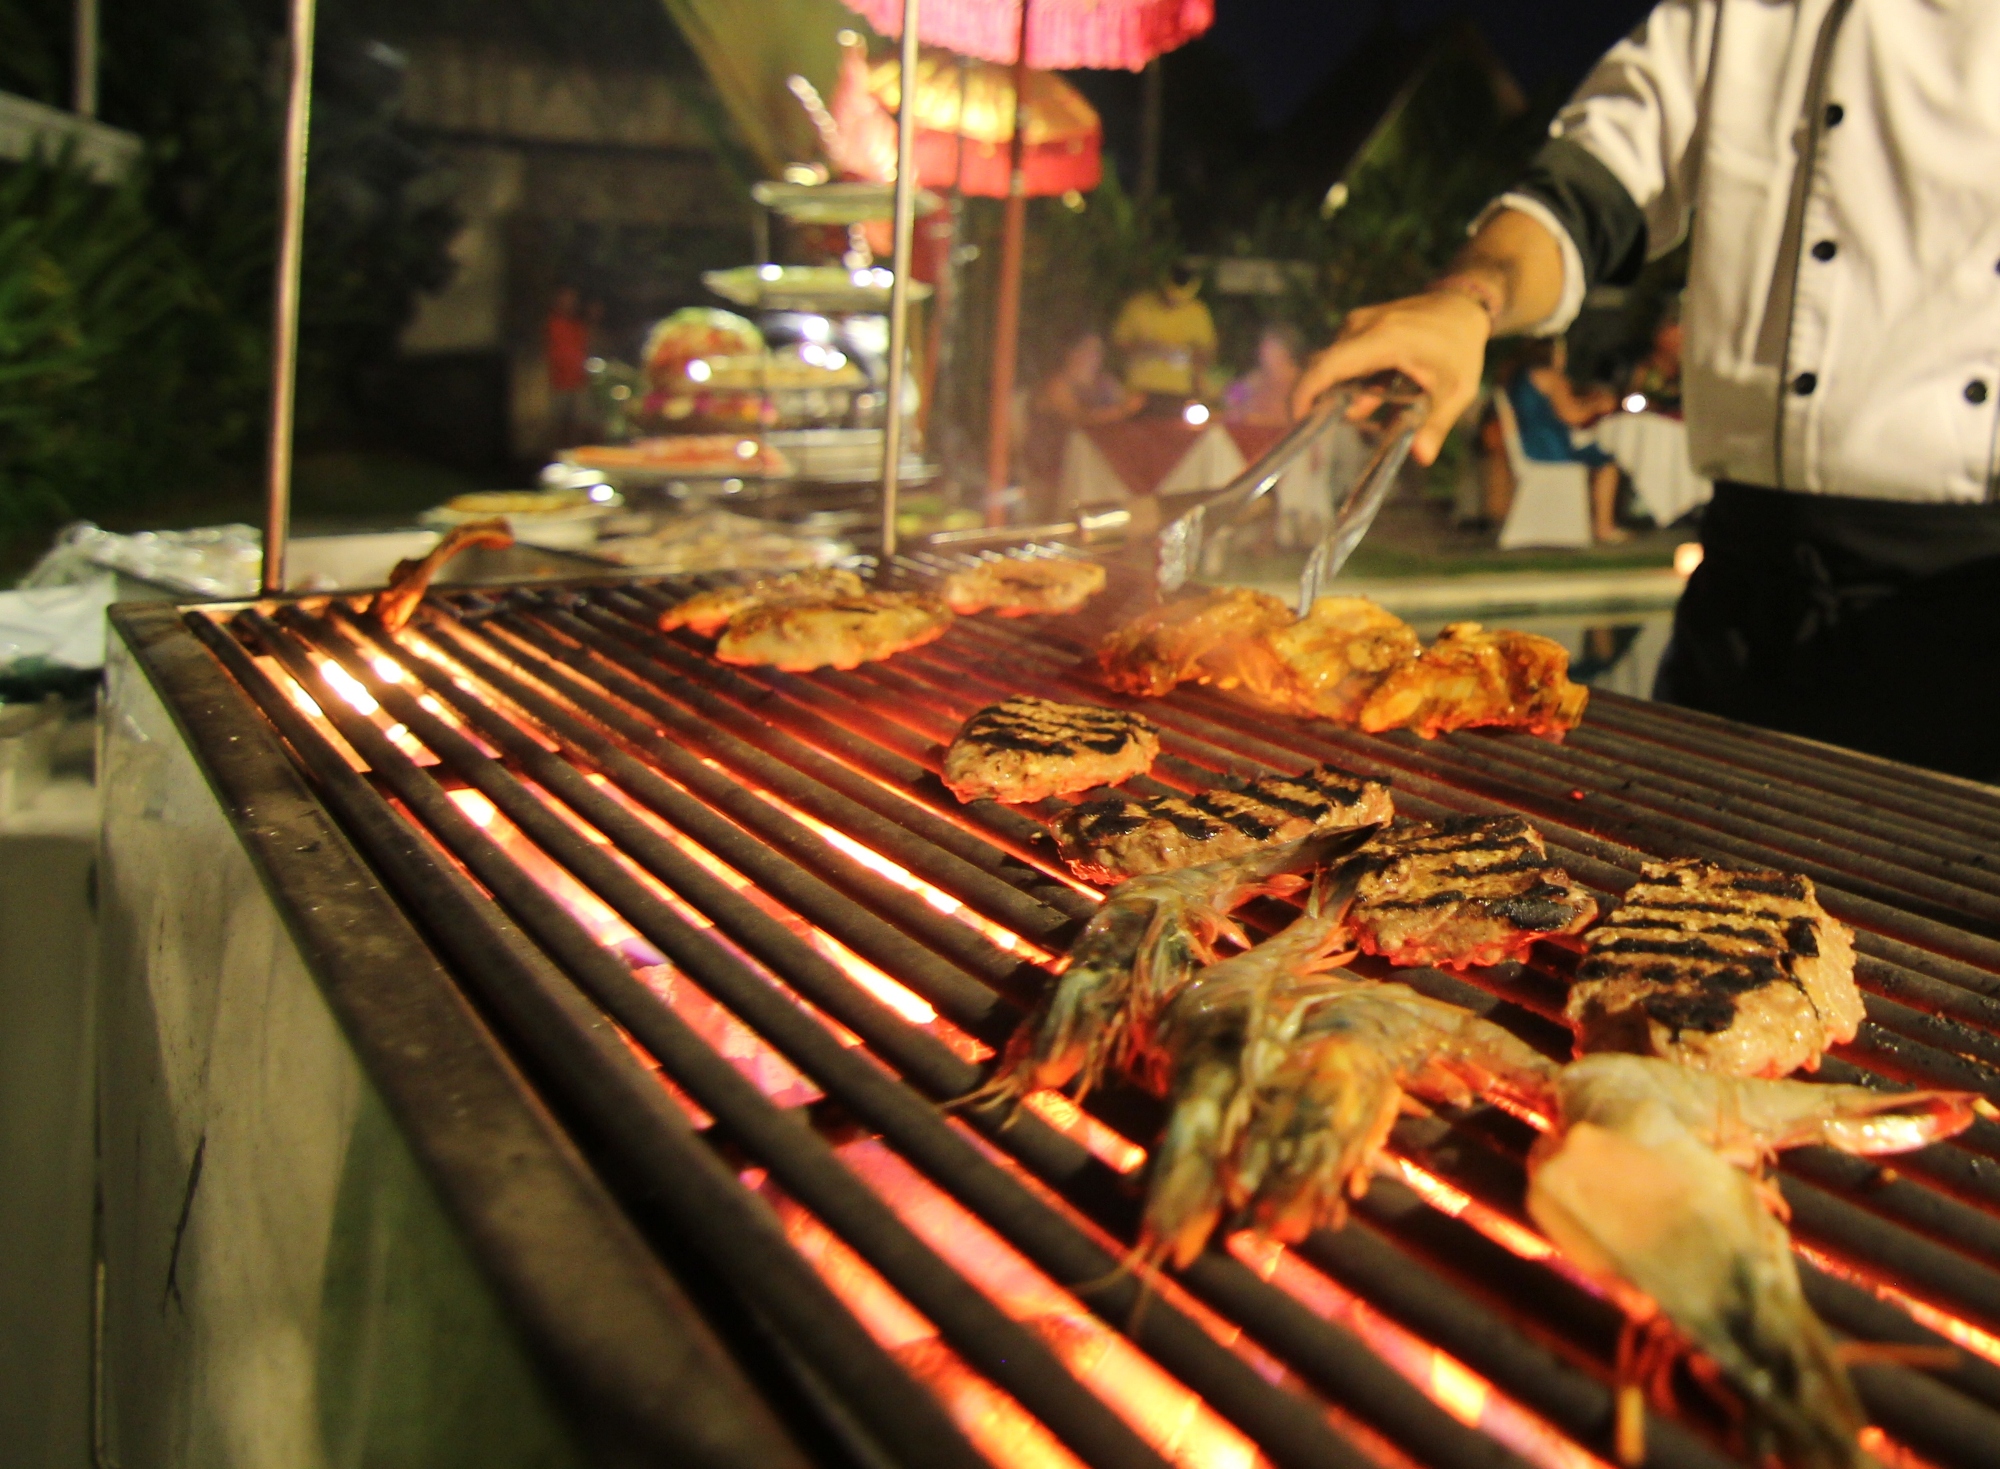 Bali New Year’s Eve at Pencar Seafood & Grill - Bali Travel Blog